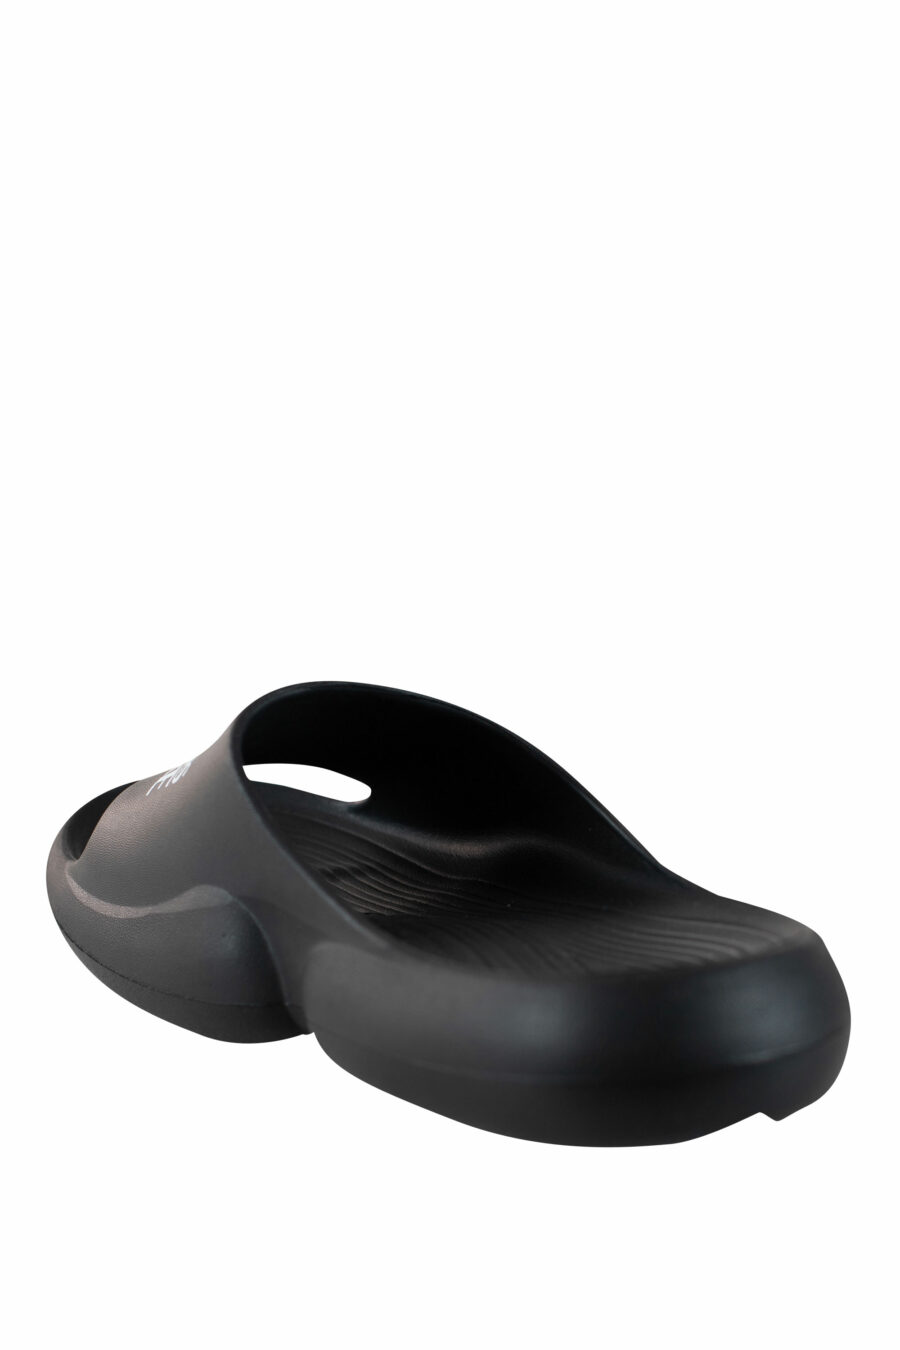 Schwarze Flip Flops mit Plateau und Logo - IMG 4450